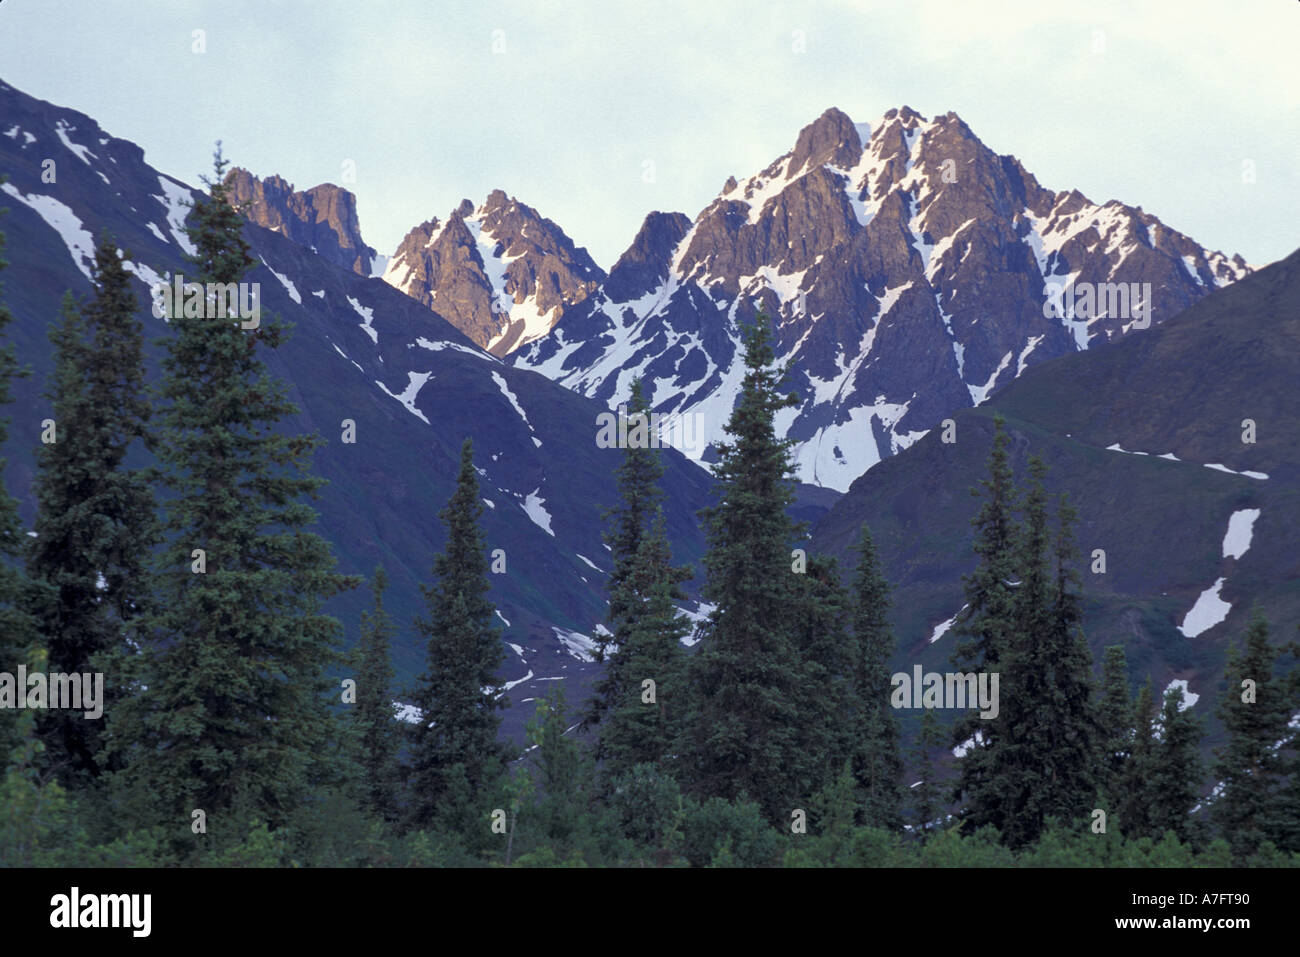 Nordamerika, USA, AK, George Parks Hwy, Blick auf die Berge Alaskas George Parks Highway entlang. Stockfoto